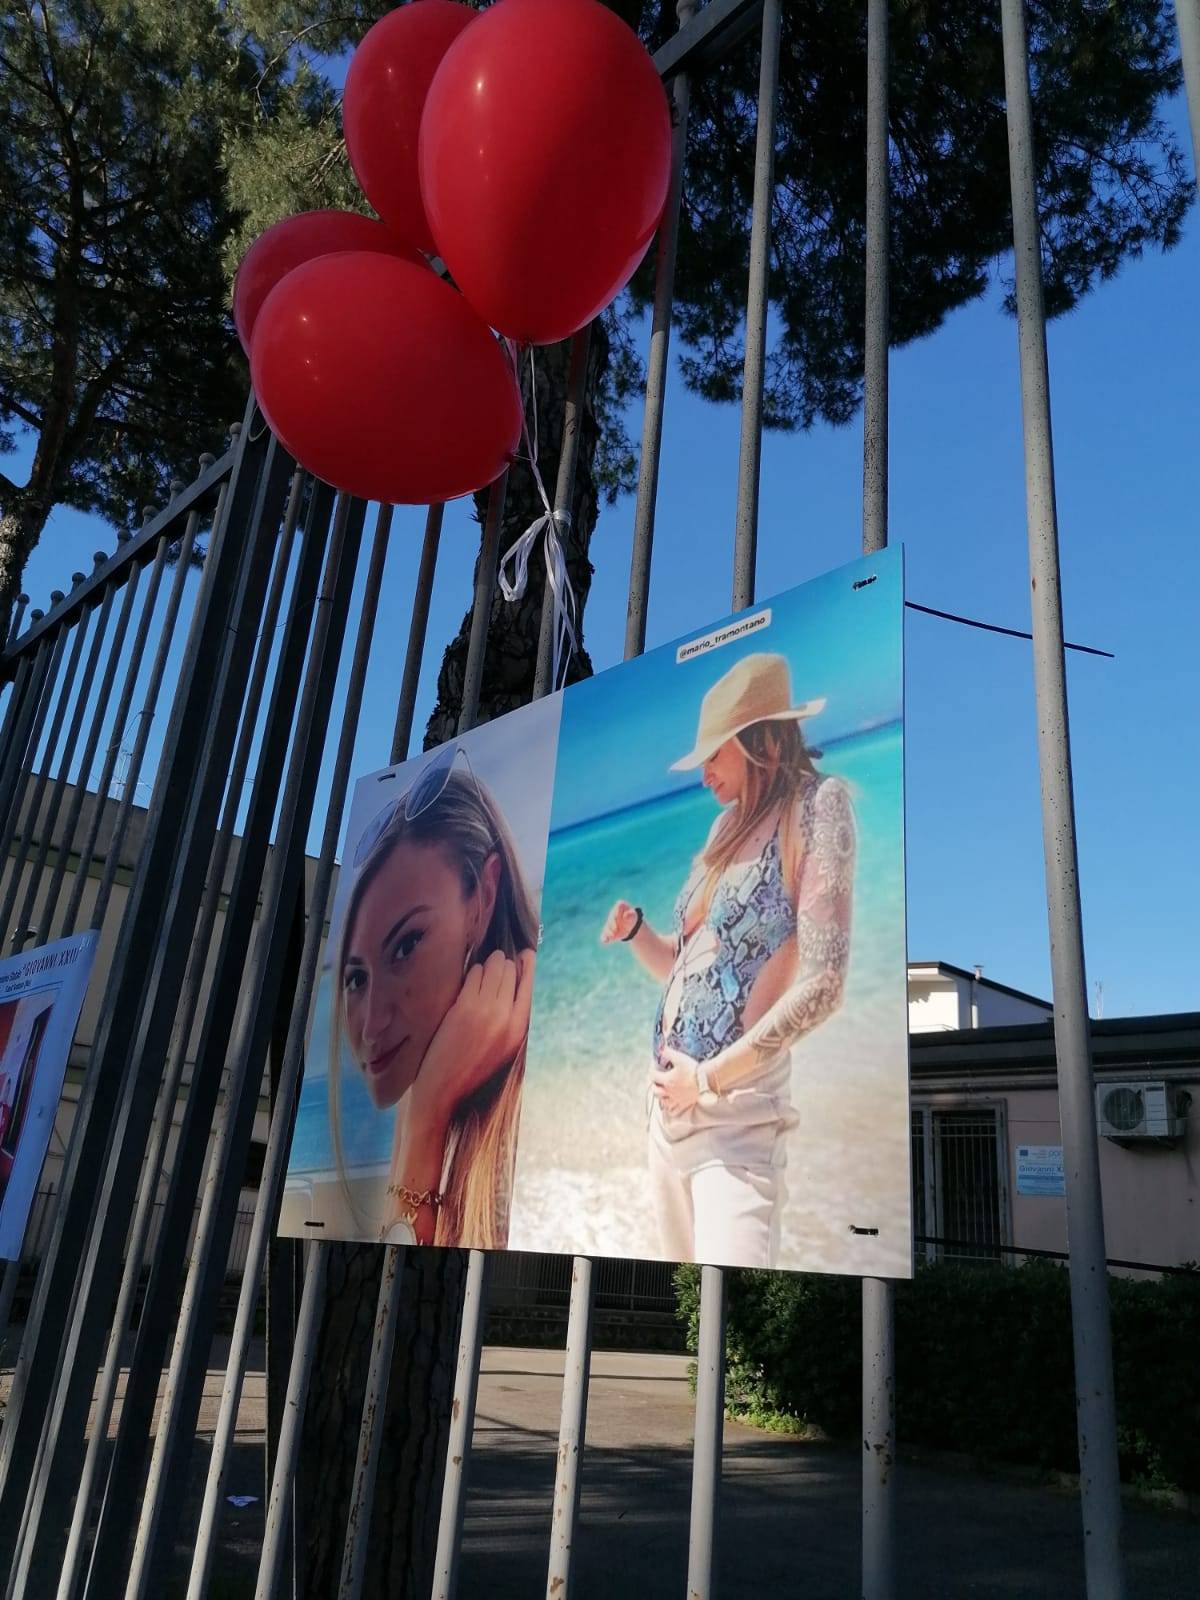 Una foto di Giulia Tramontano e palloncini rossi alla fiaccolata a Sant'Antimo